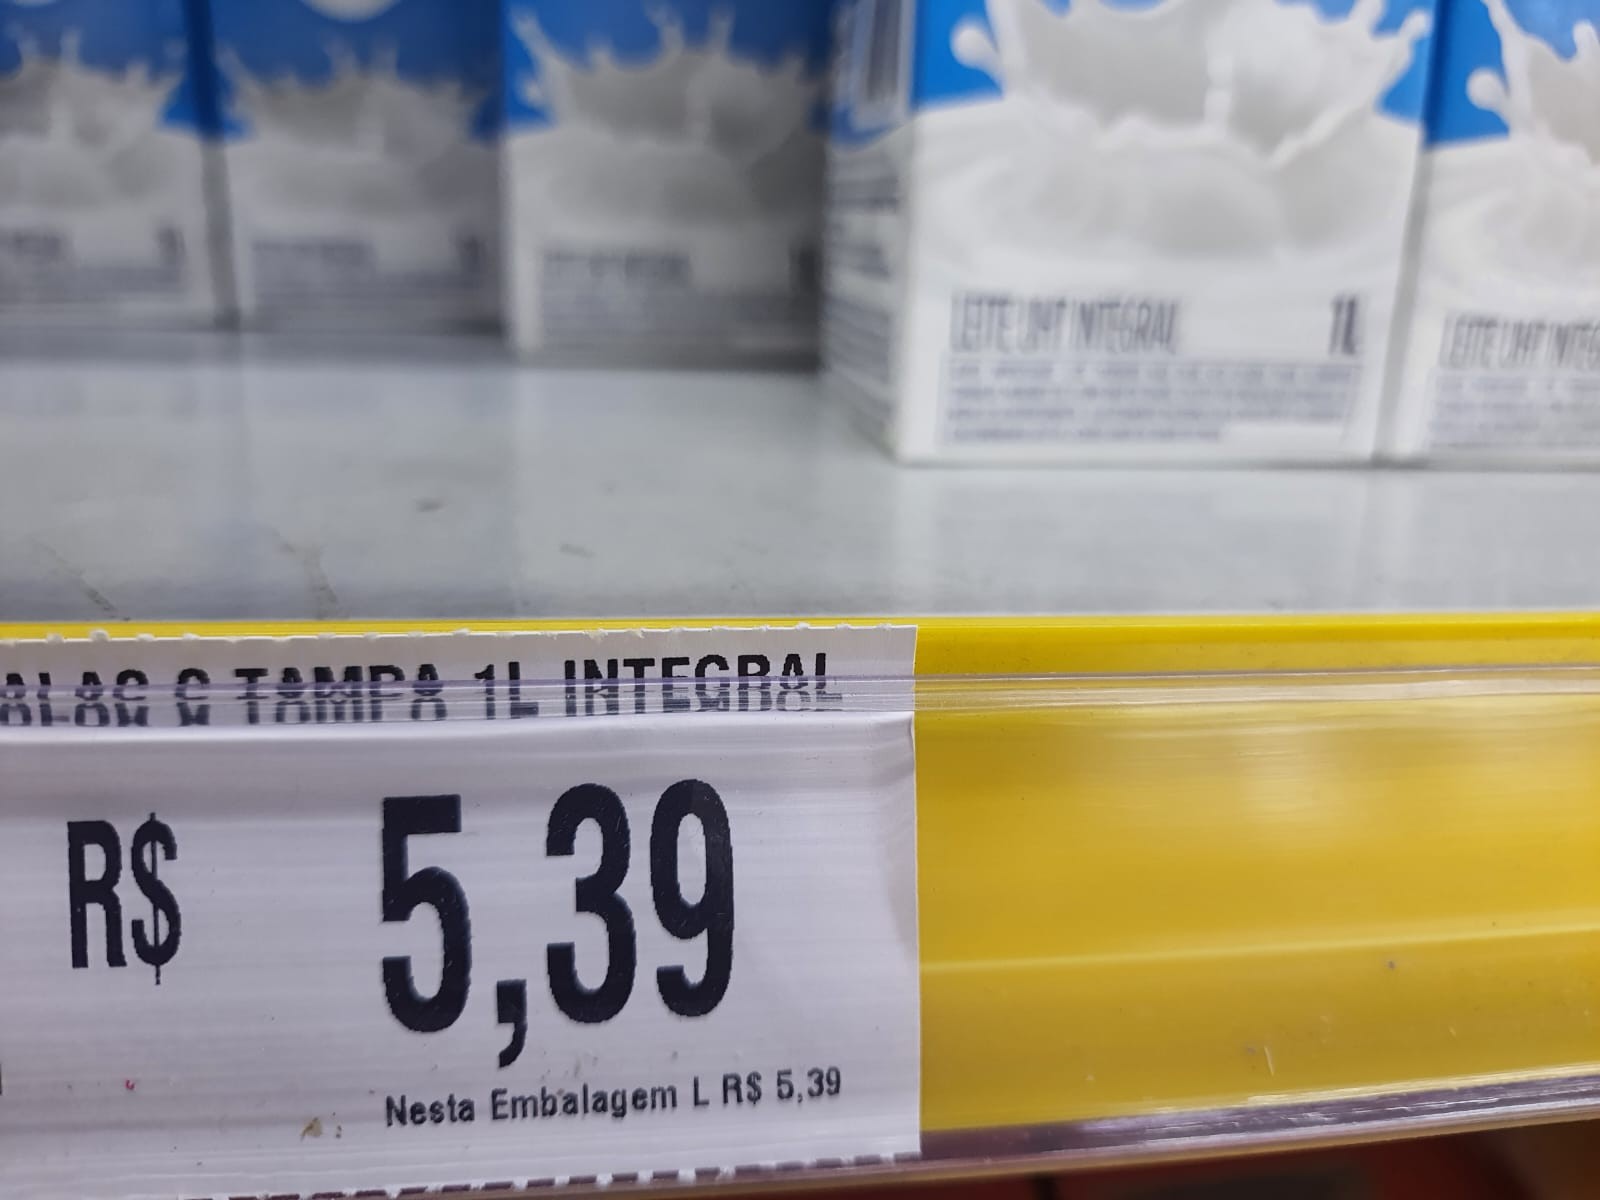 Oferta de leite longa vida em supermercado no ABC Paulista (Foto: Editora Globo)